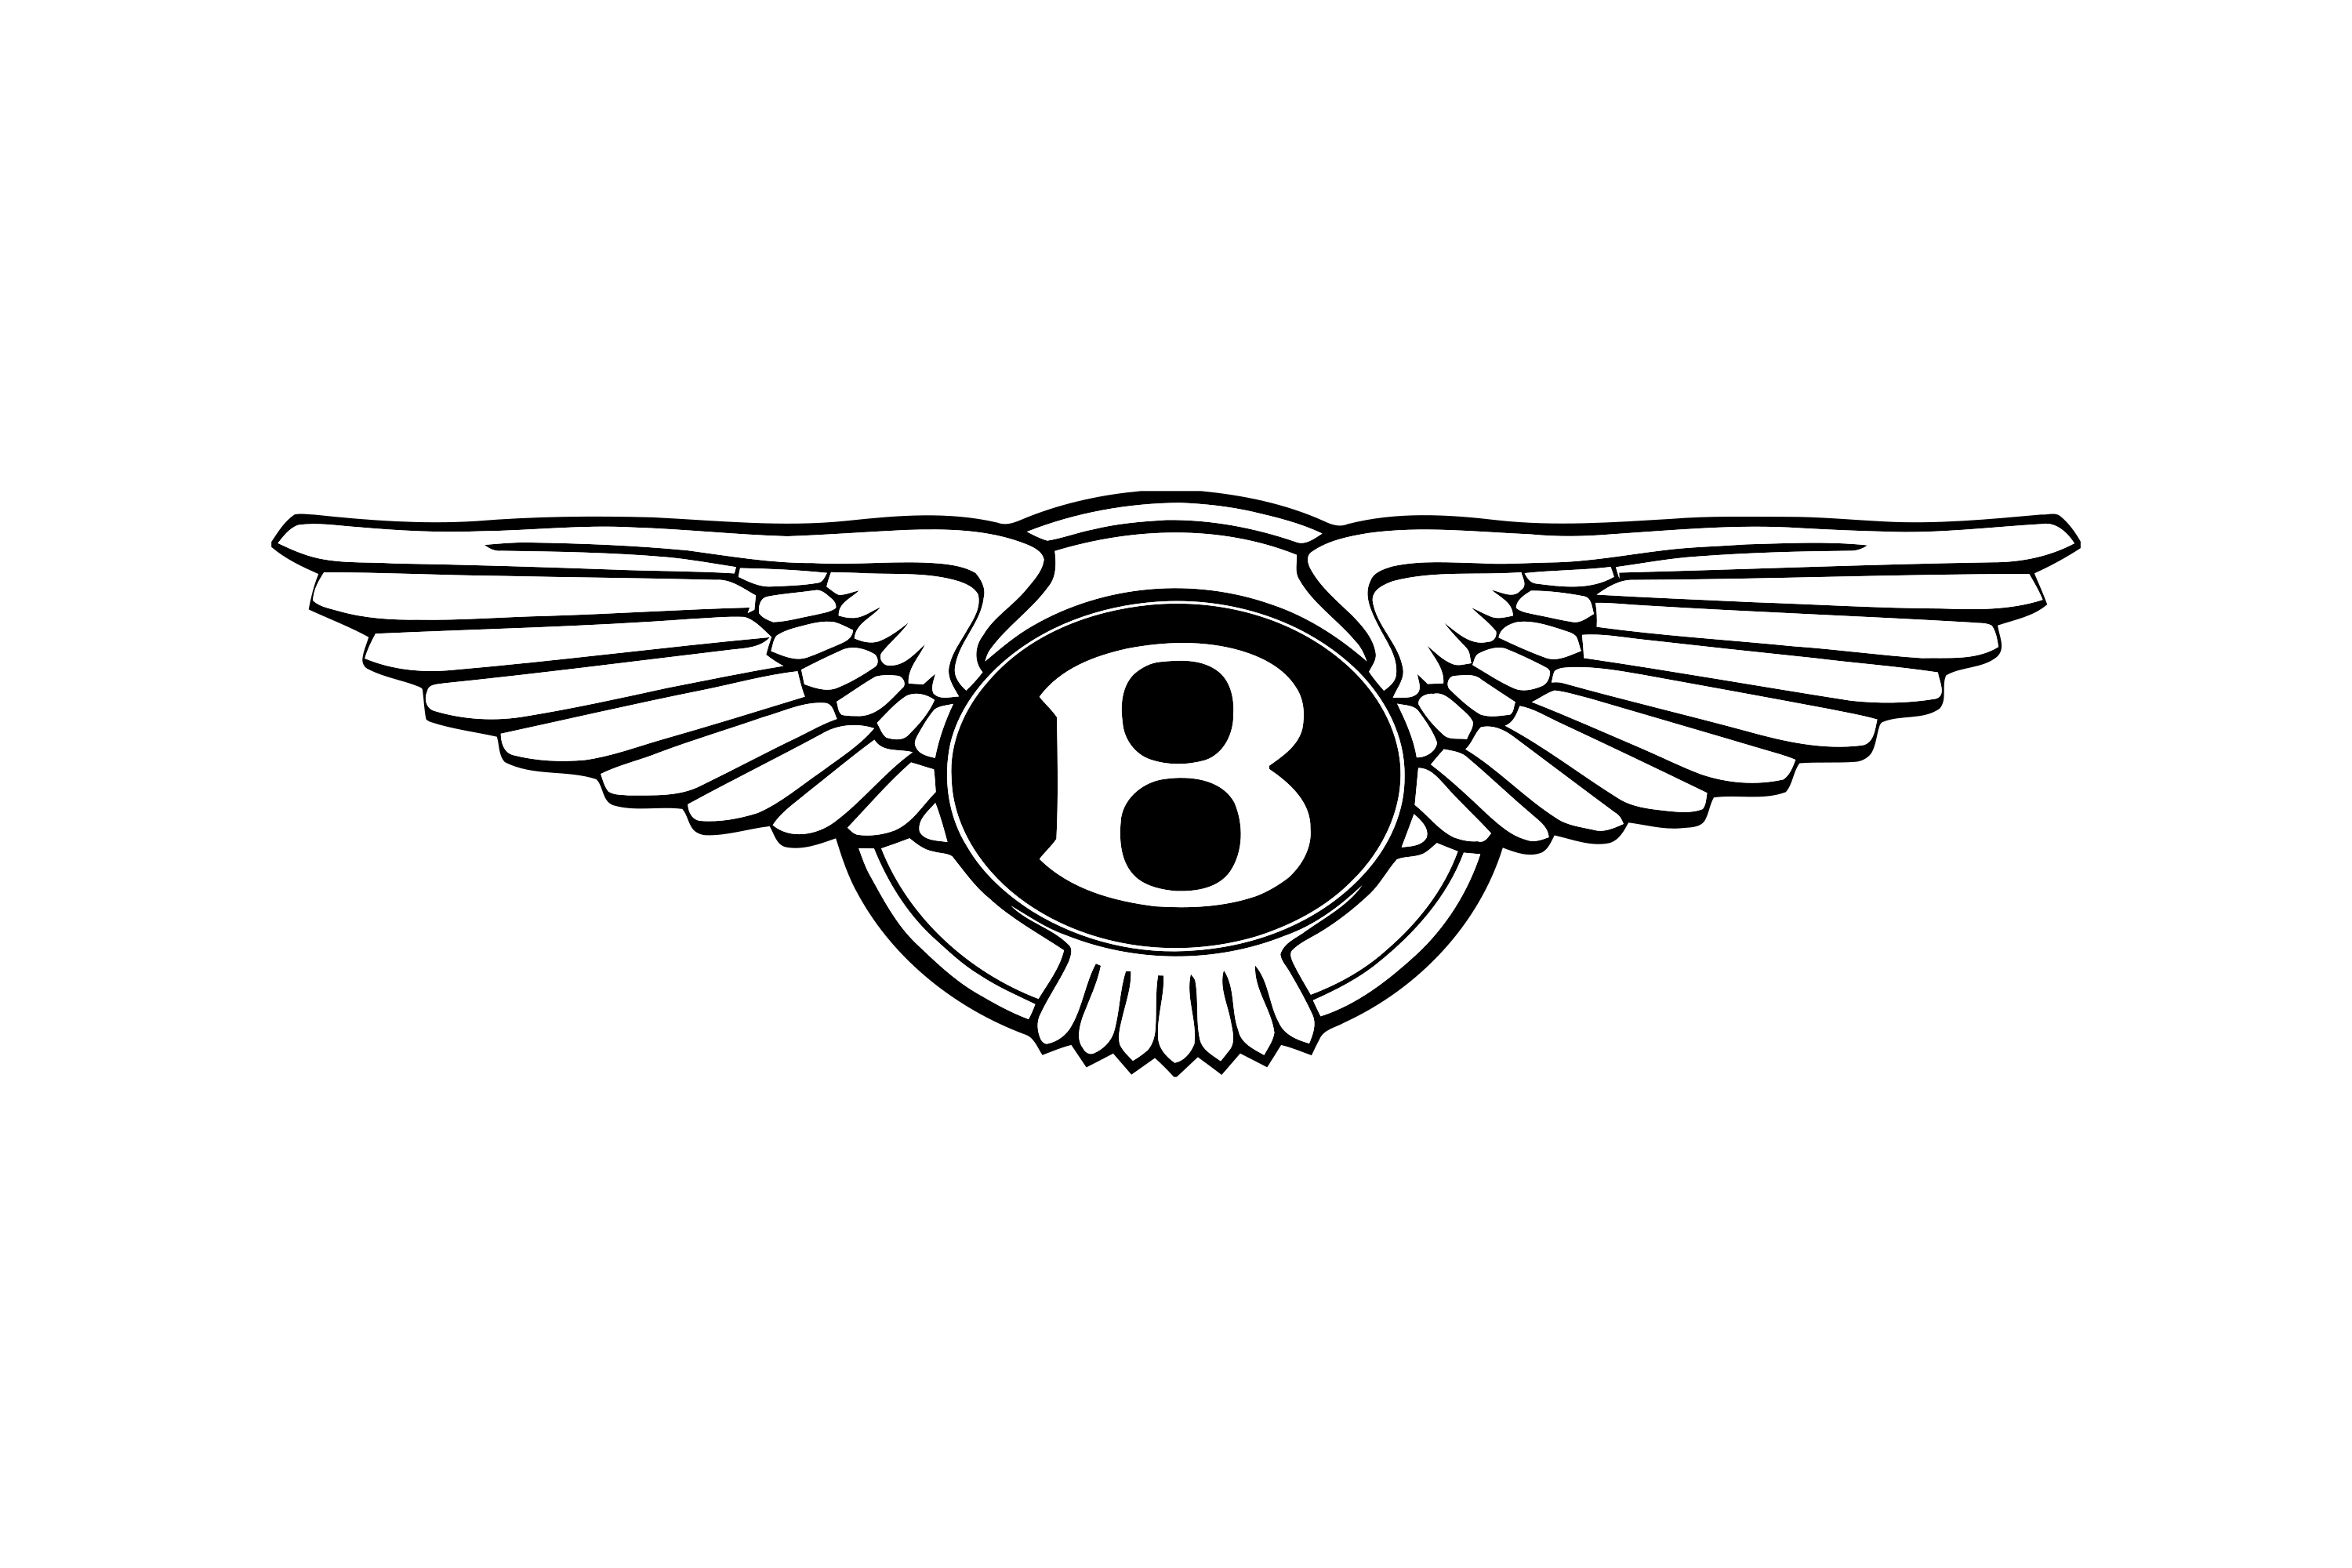 Bentley Logo, Polished Logo B